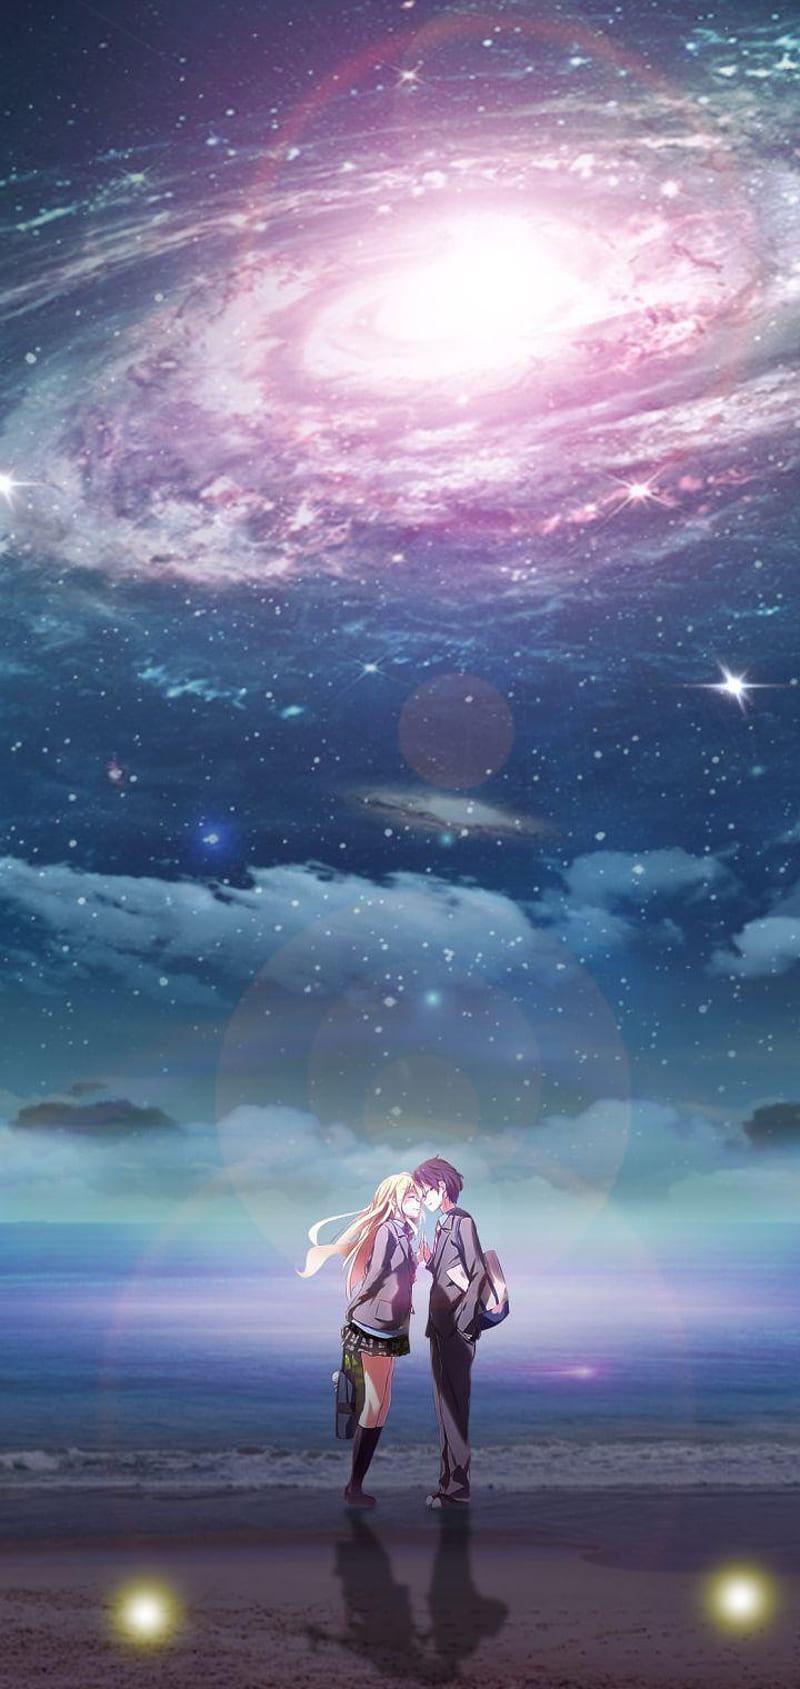 Hình ảnh bầu trời đêm anime đẹp lãng mạn nhất